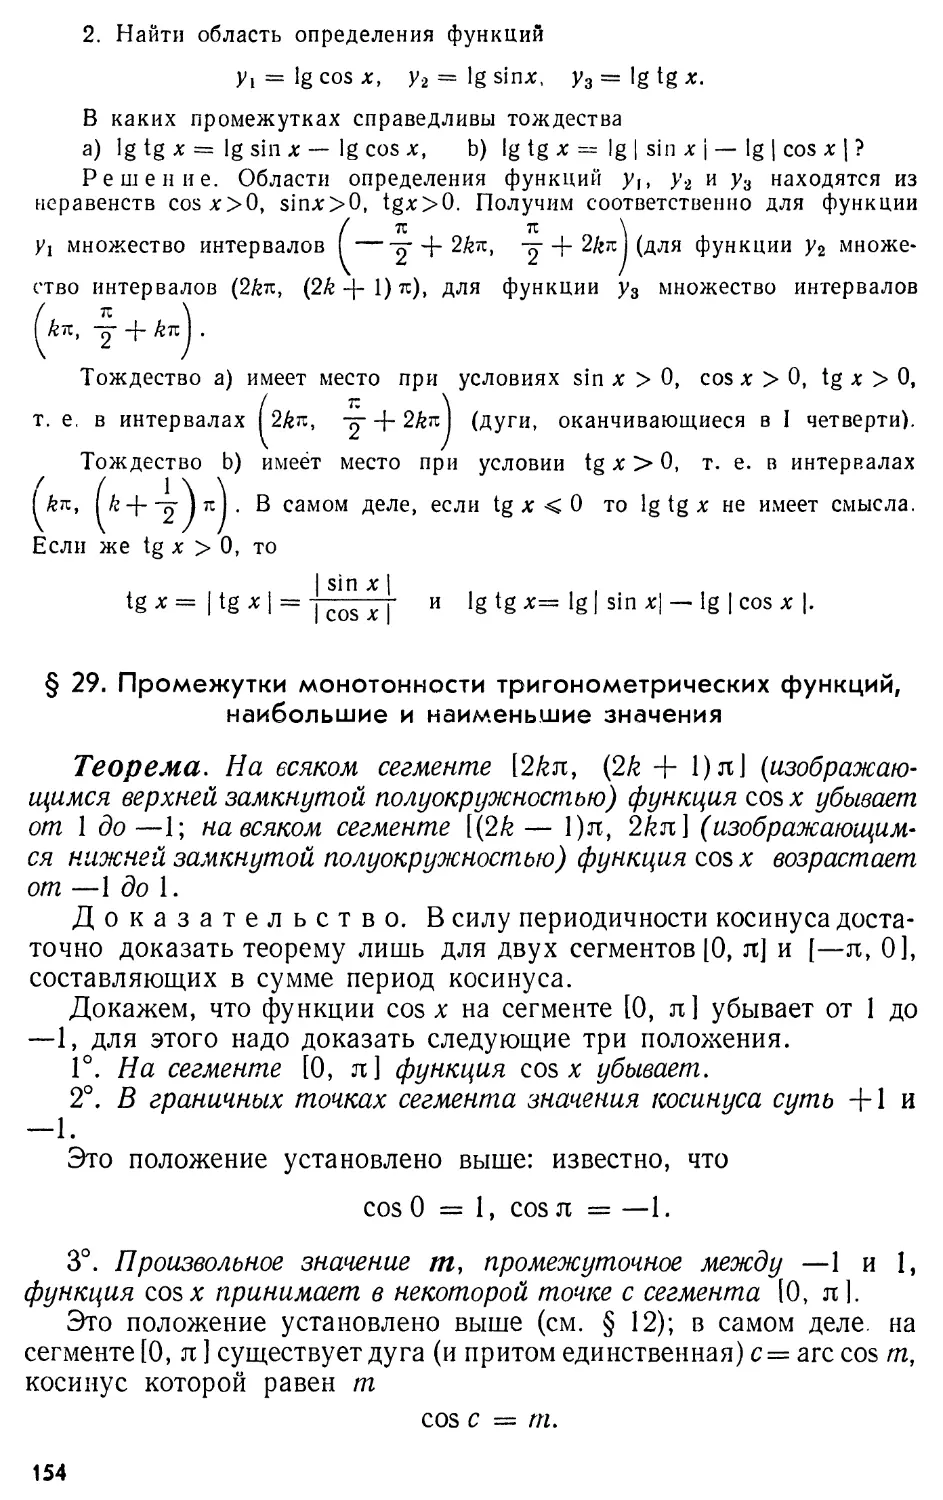 § 29. Промежутки монотонности тригонометрических функций, наибольшие и наименьшие значения